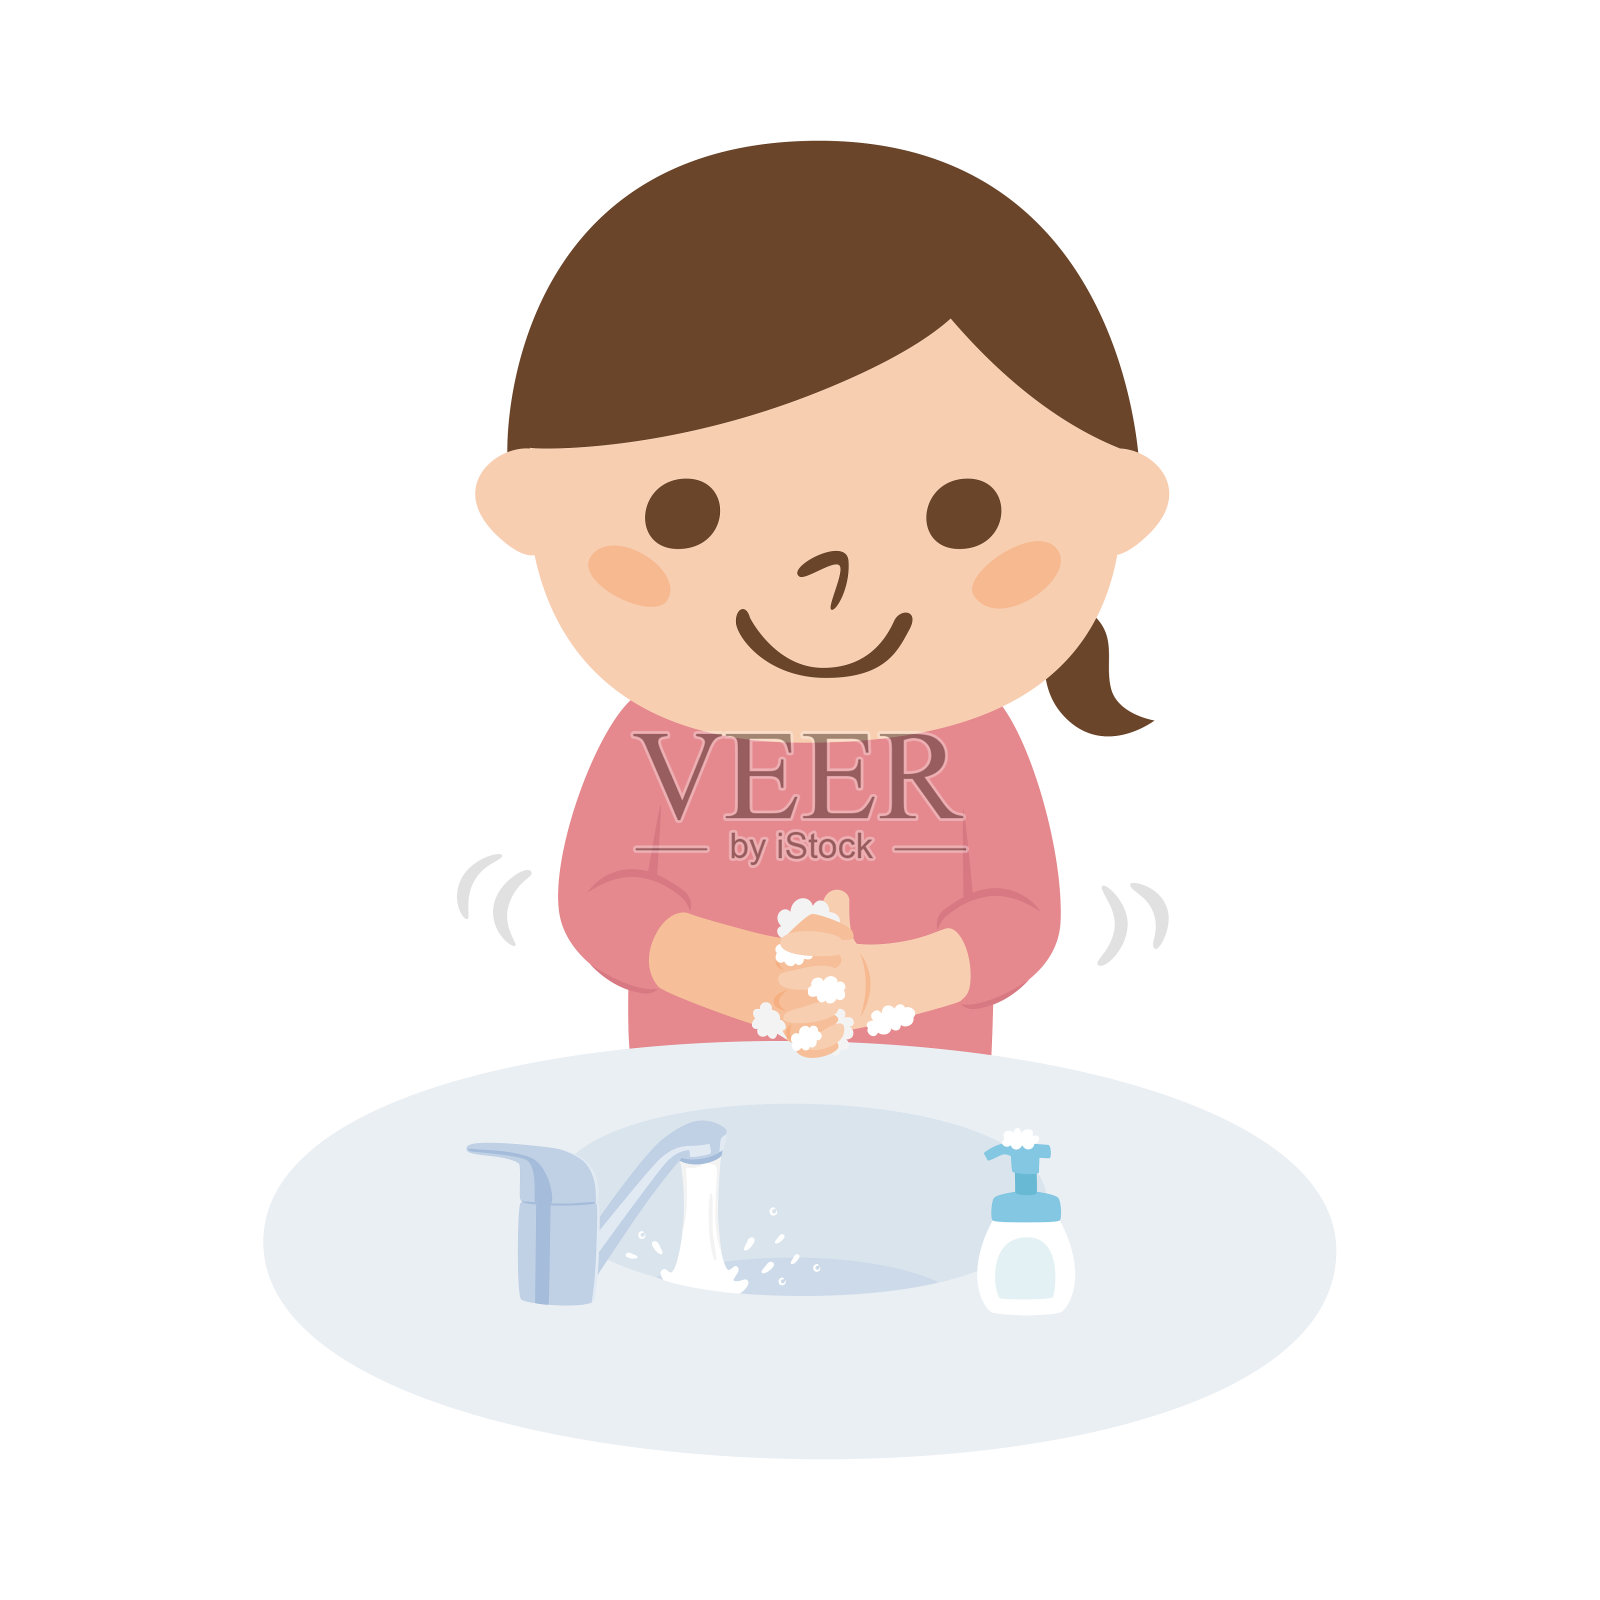 疾病预防说明。一个女孩用肥皂洗手以避免感冒。设计元素图片